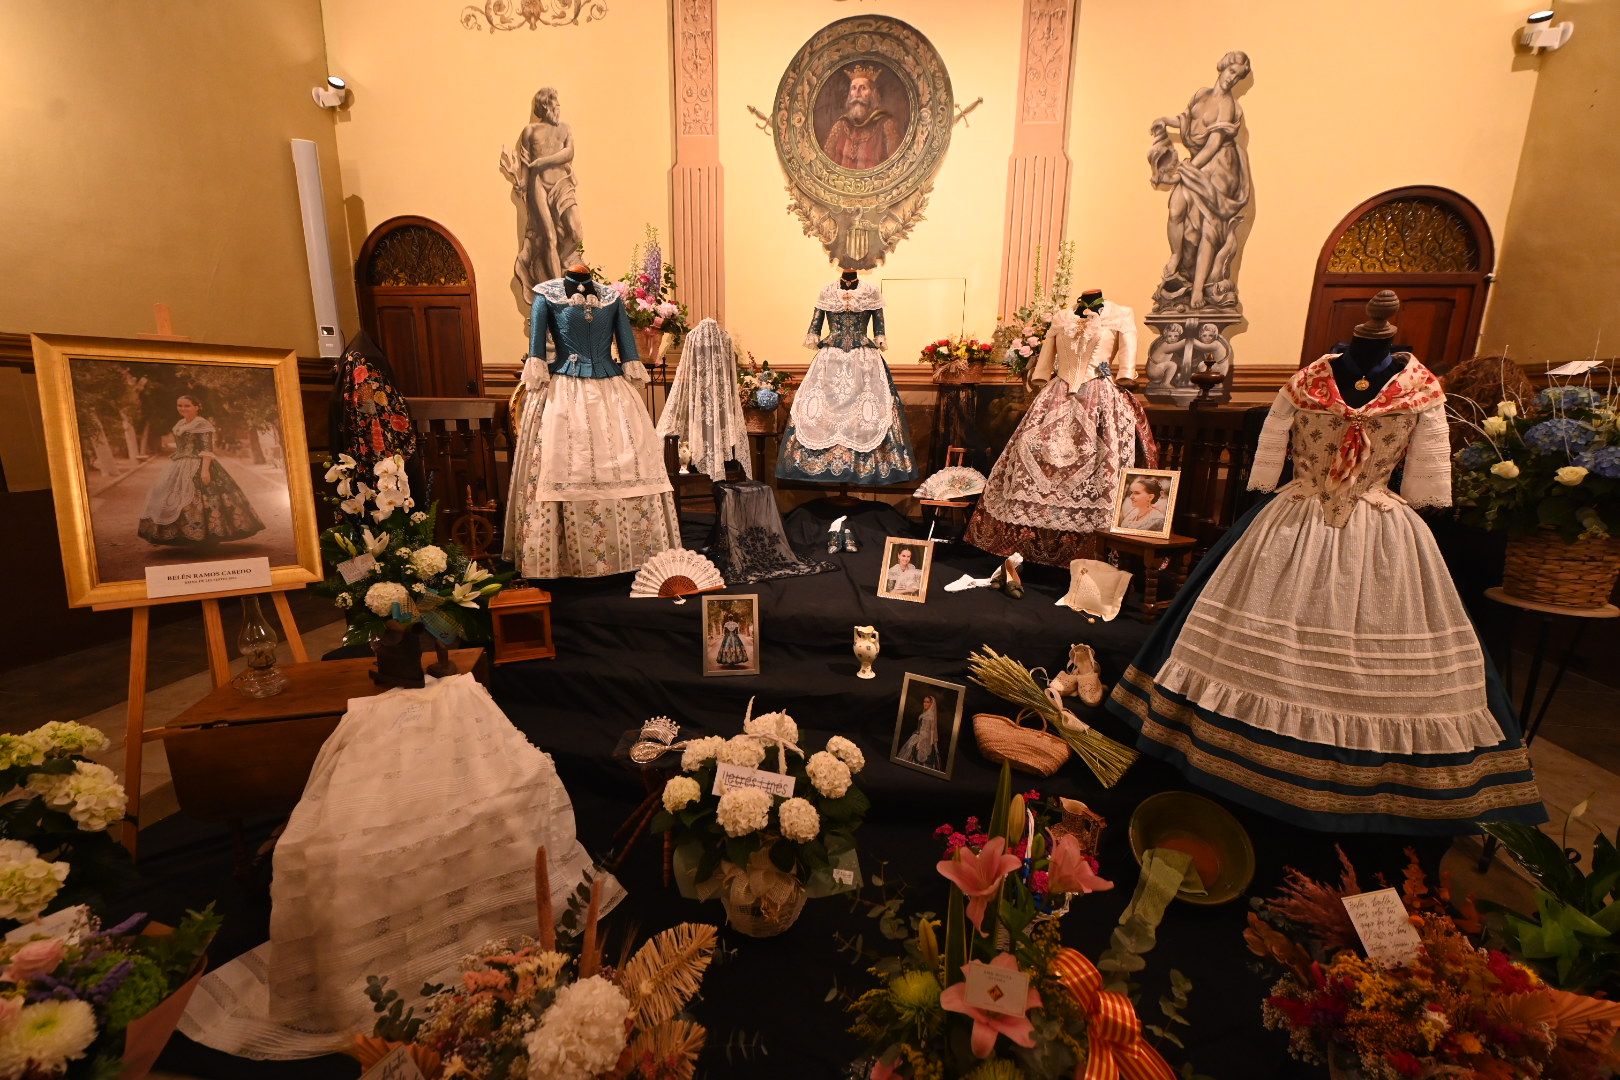 Les imatges de l'obertura del tradicional manifest de la reina i les dames de les festes de Vila-real